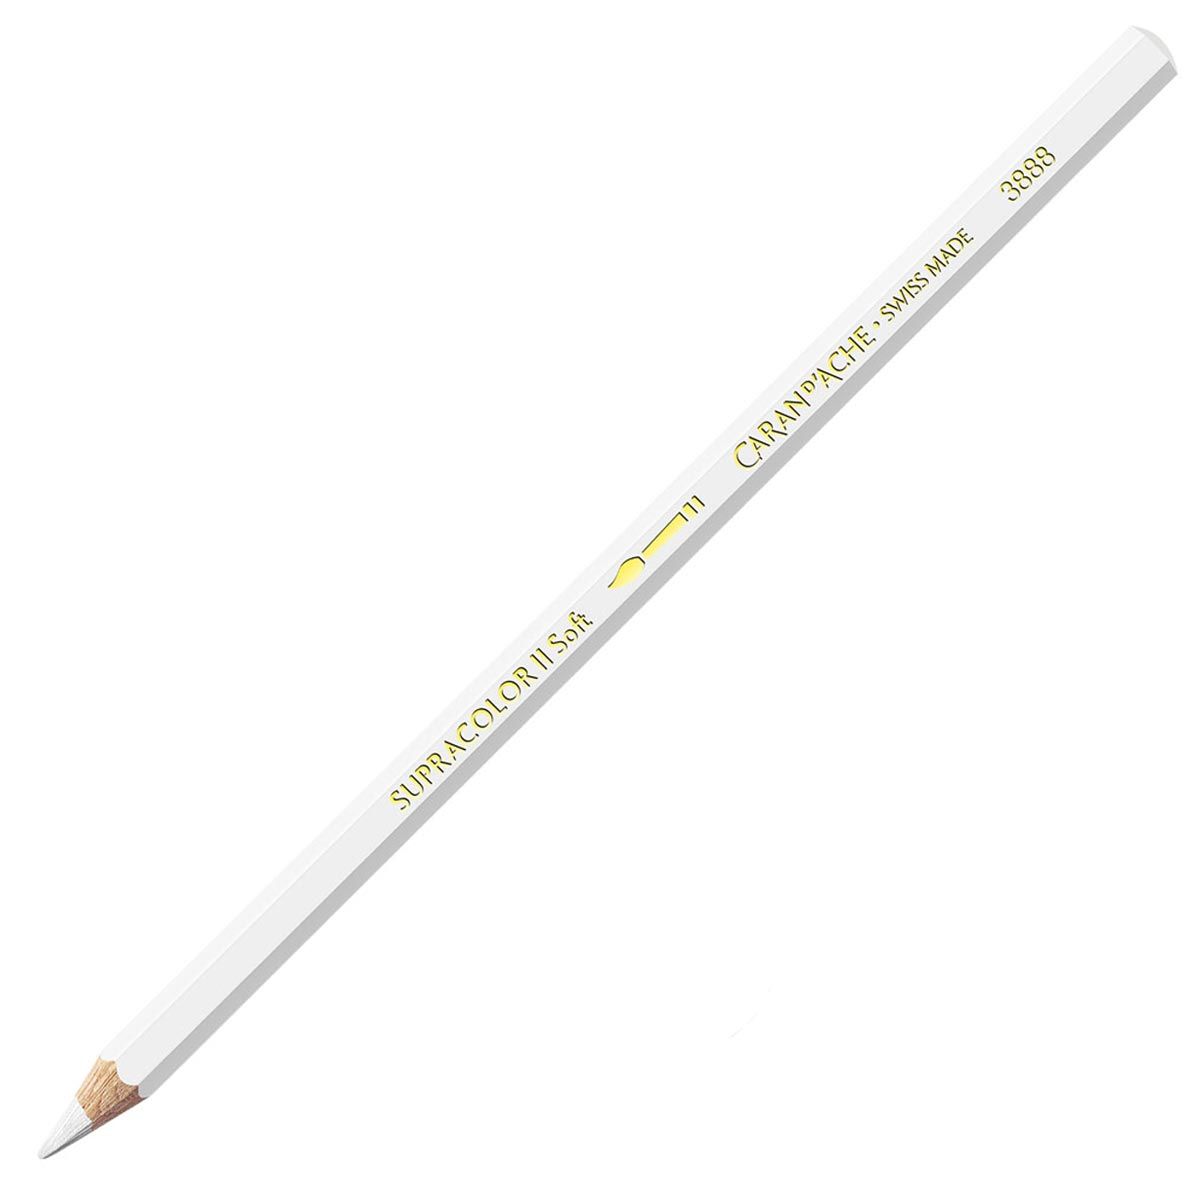 Caran d'Ache Supracolor ll Soft Aquarelle Pencil - White 001